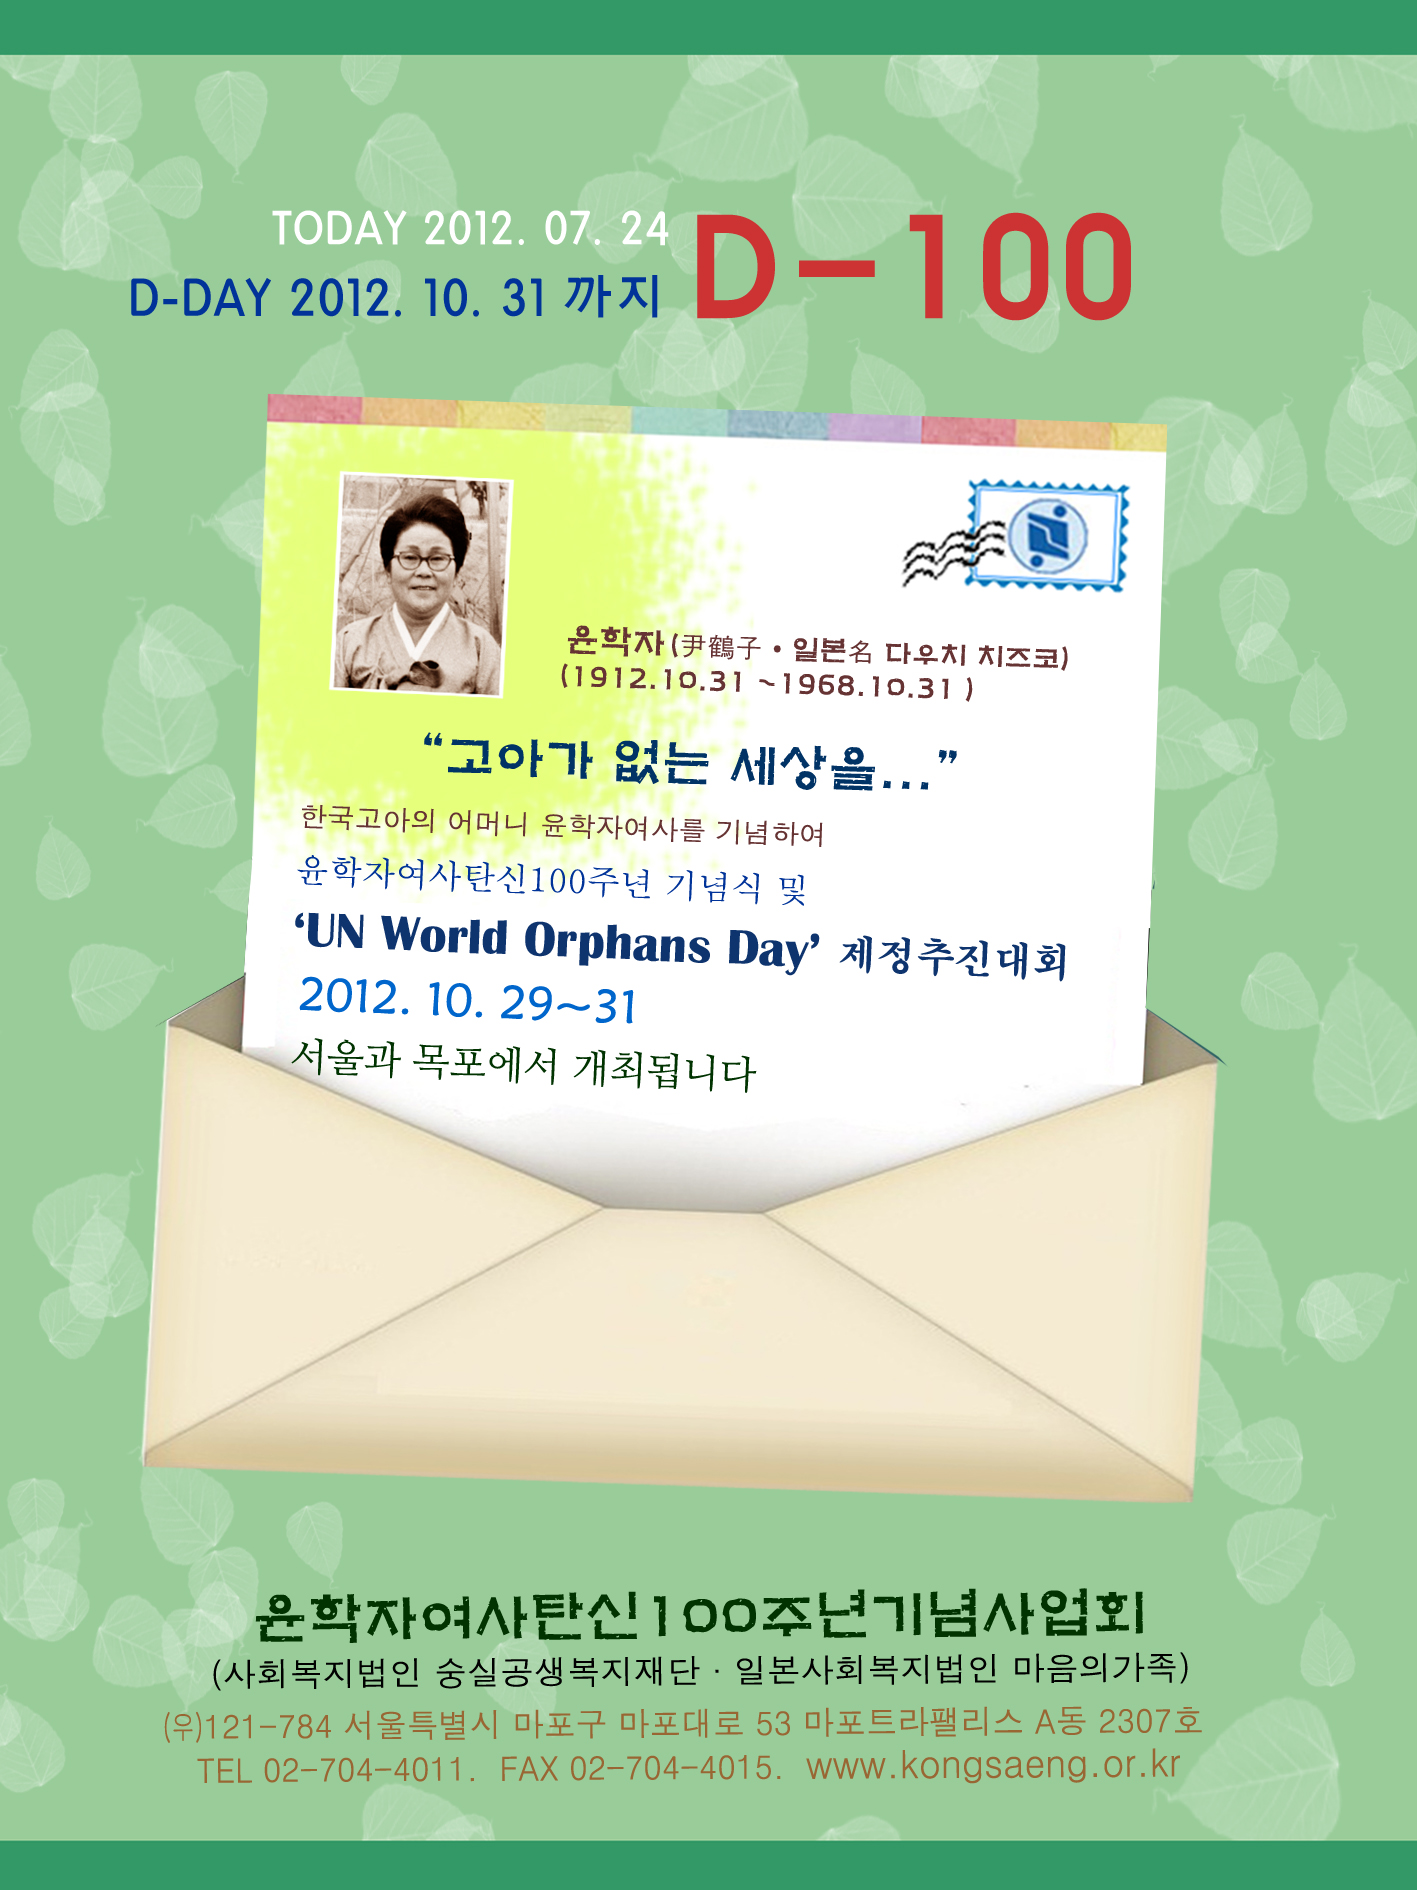 [2012/7/23] \'UN World Orphans Day\' ȸ D-100